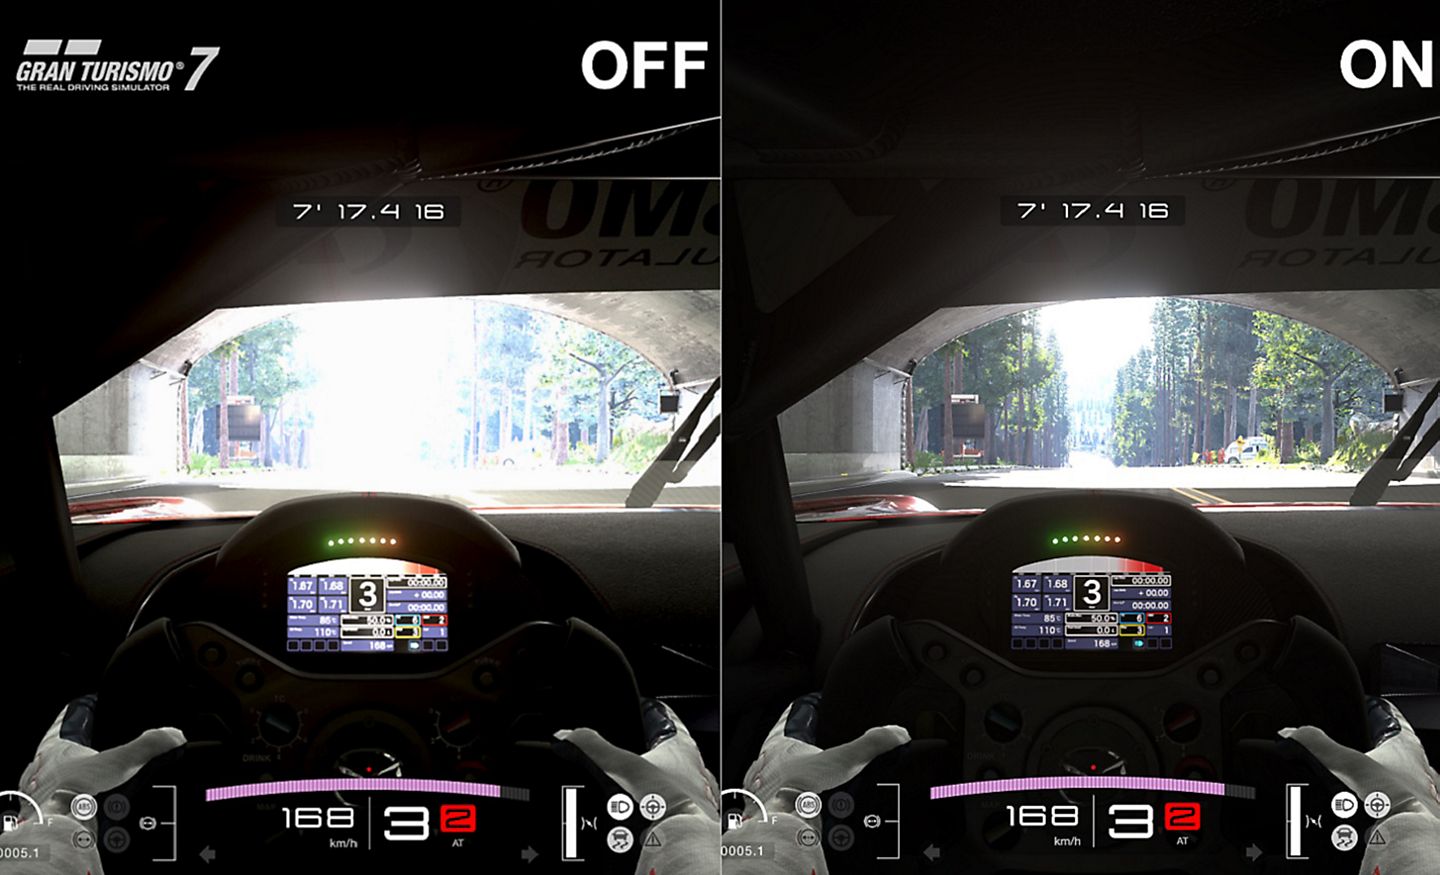 شاشة منقسمة للعبة قيادة تُظهر الفرق مع تشغيل تقنية Auto HDR Tone Mapping وإيقاف تشغيلها